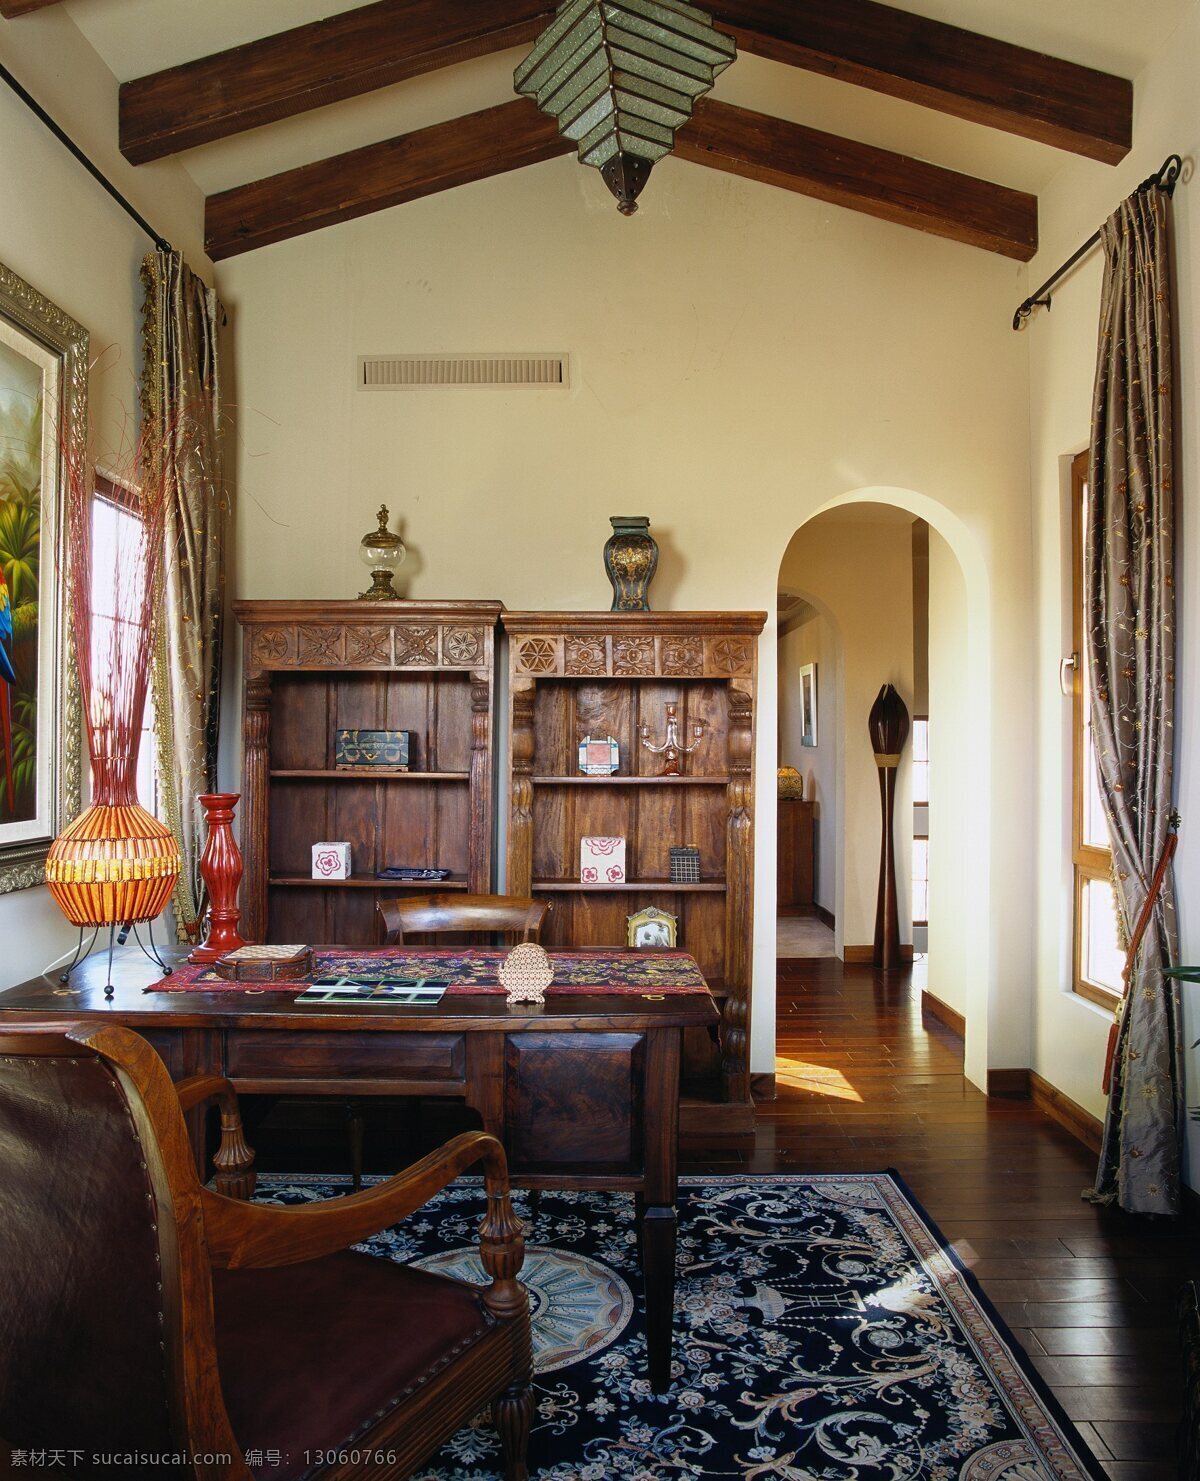 创意 传统 复古 美式 书房 装修 效果图 创意摆件 吊灯 木制书桌 室内装修 印花地毯